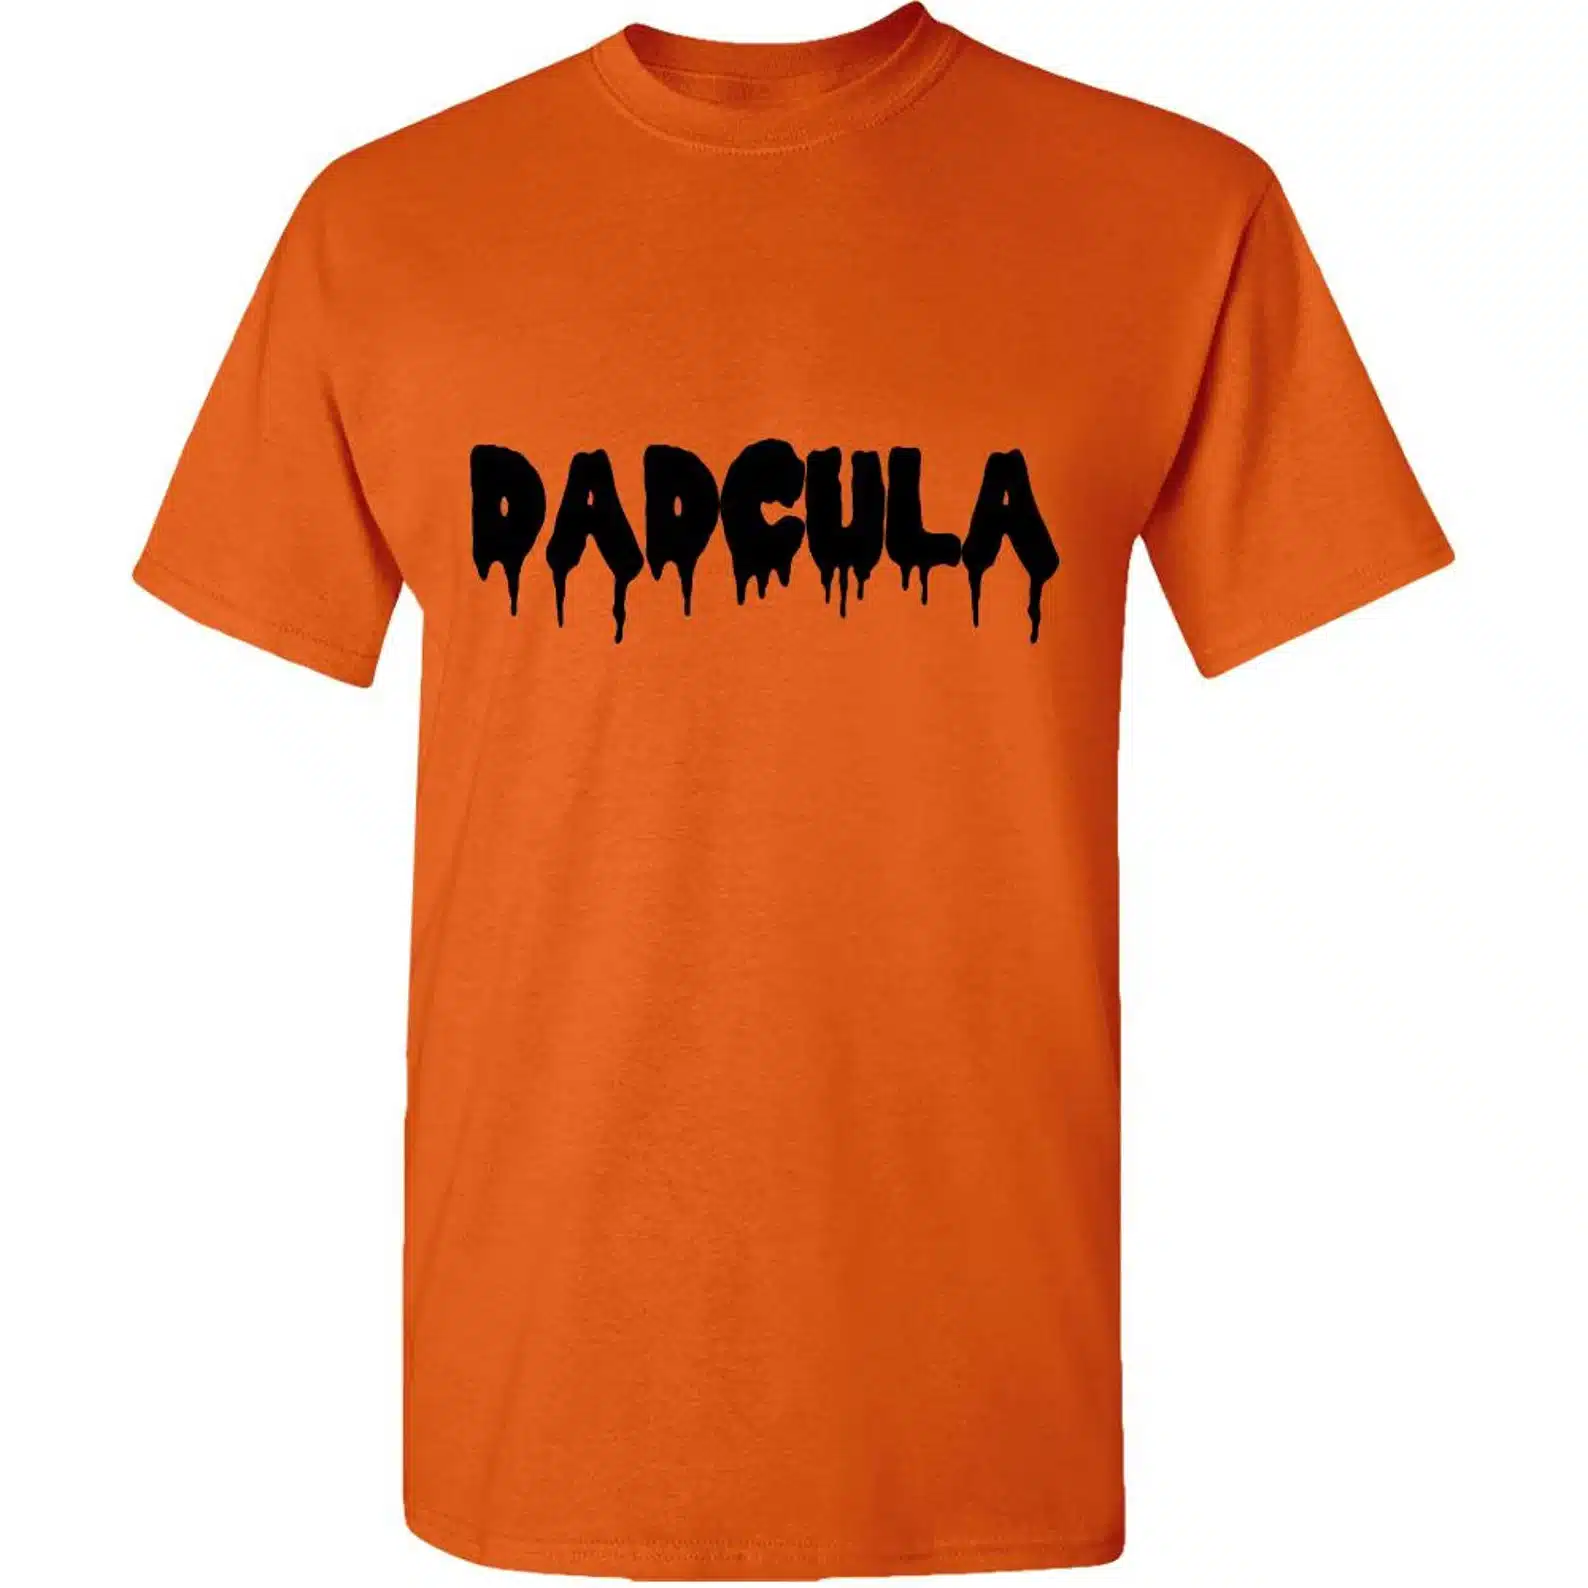 Dadcula Orange T-Shirt